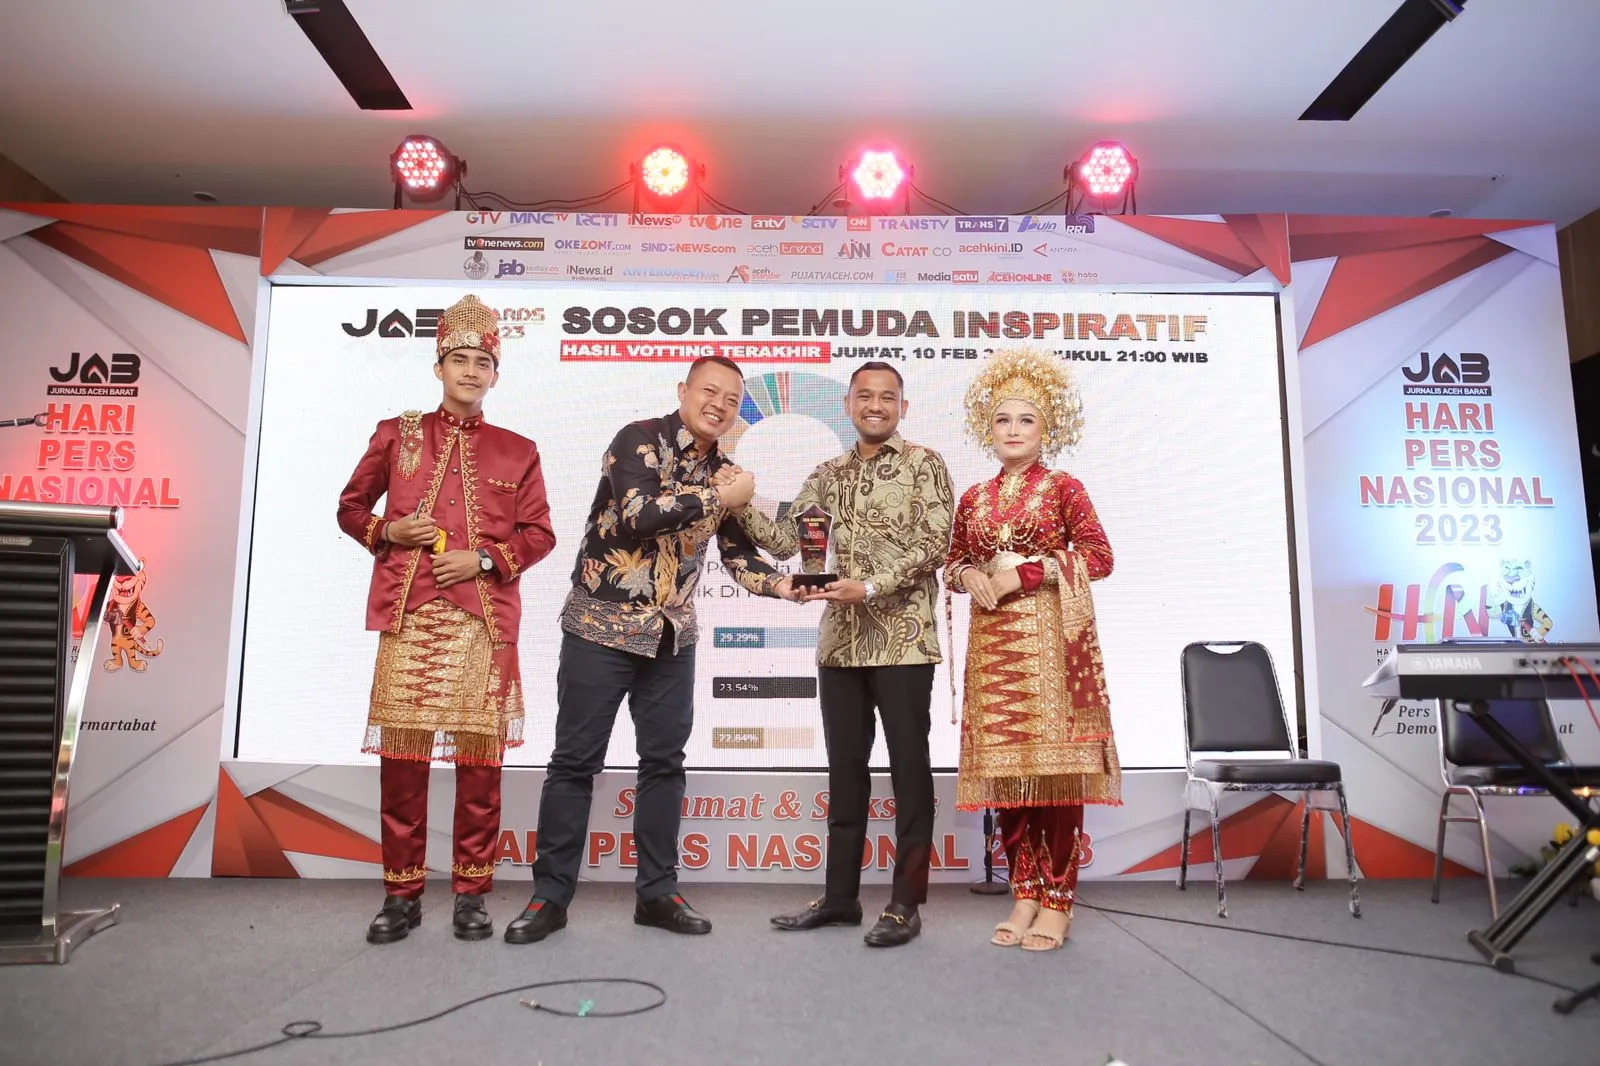 Jamaluddin Idham saat menerima penghargaan JAB Award 2023 sebagai sosok pemuda inspiratif di Pantai Barat Aceh. (Foto: Dok. Pribadi)